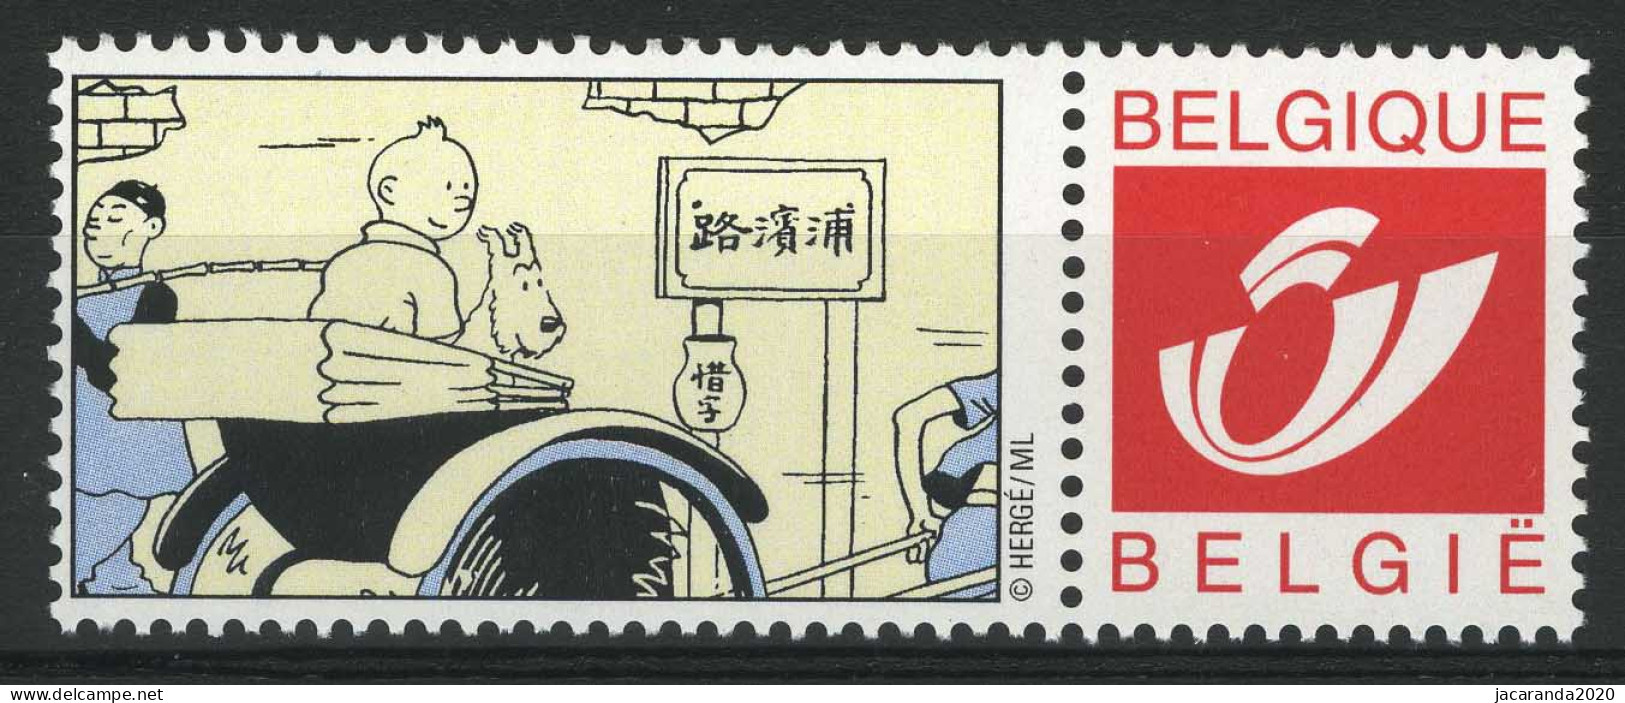 België 3181 - Duostamp - Kuifje In Koets - Tintin - Strips - BD - Comics - Hergé - Postfris